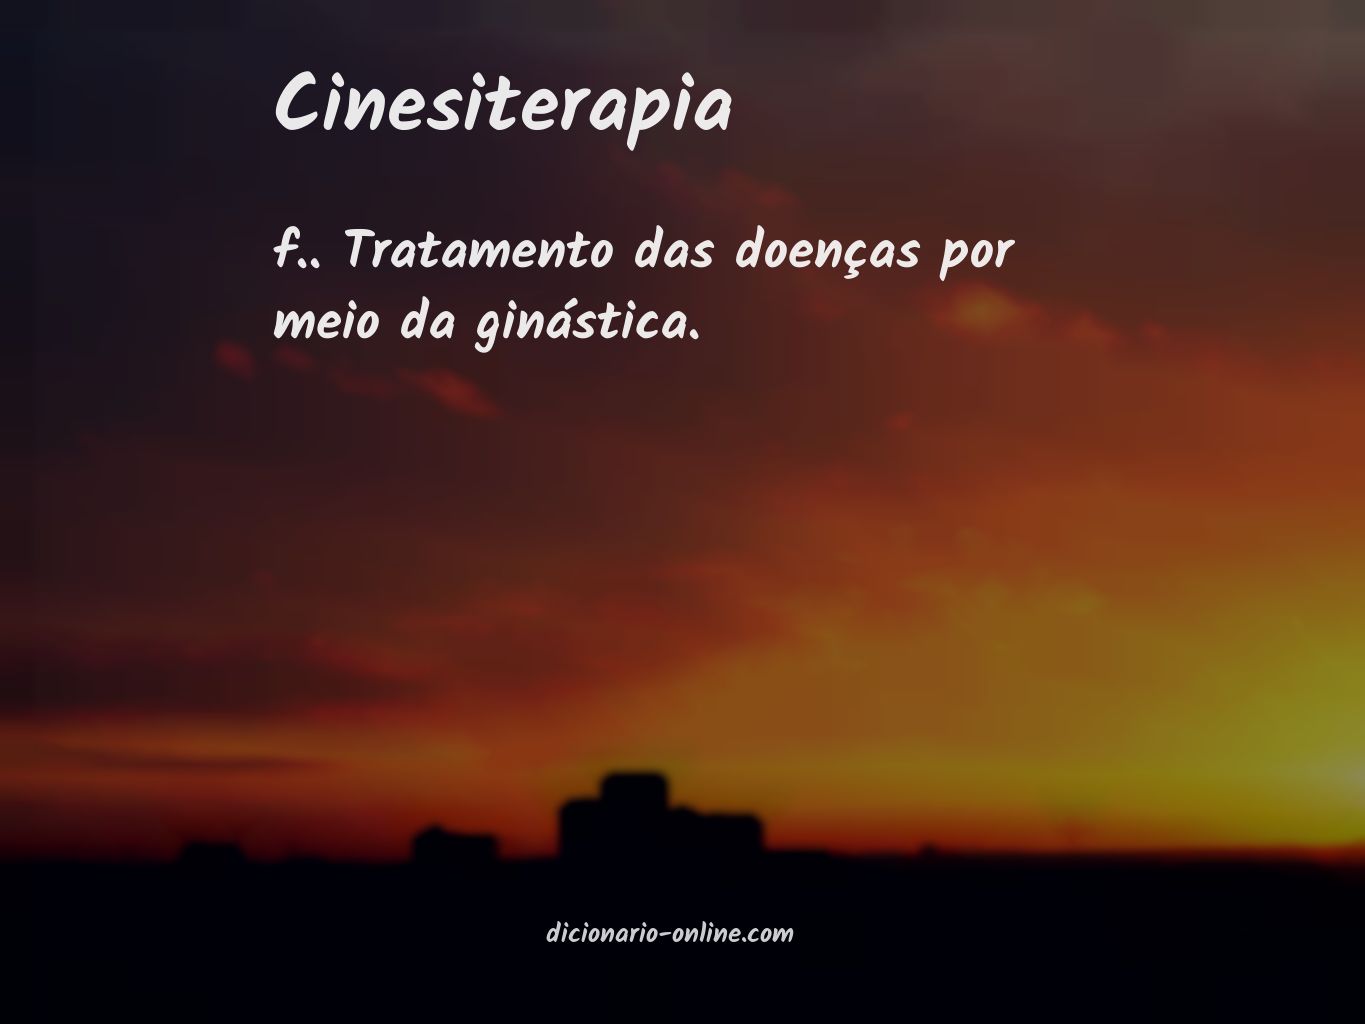 Significado de cinesiterapia